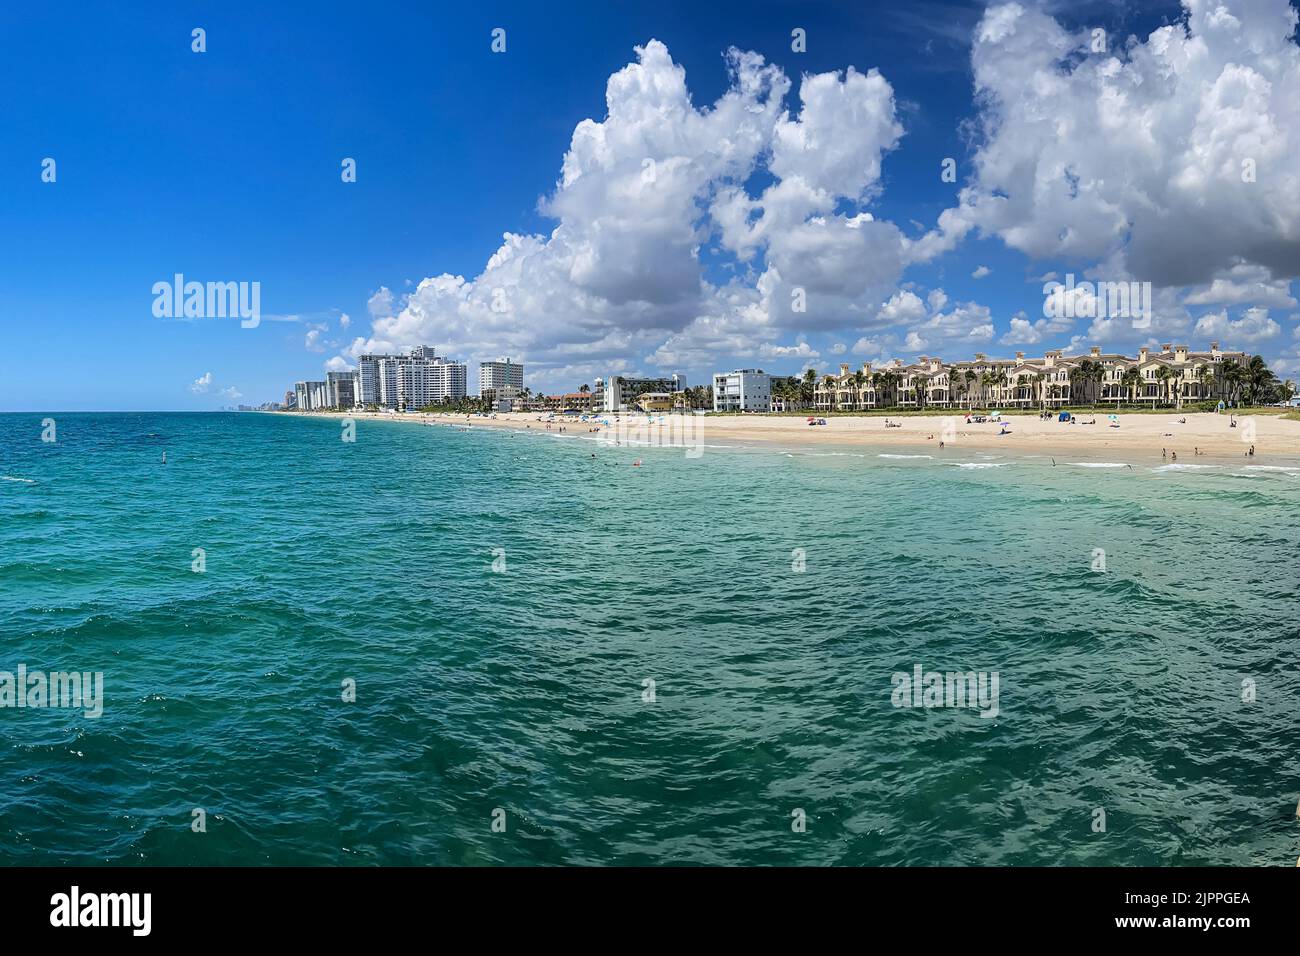 FORT LAUDERDALE, FL / EE.UU. - 11 DE JULIO: El 11 de julio de 2022, en Fort Lauderdale, FL, muestra el océano, condominios y hoteles alineados a lo largo de la costa. Foto de stock